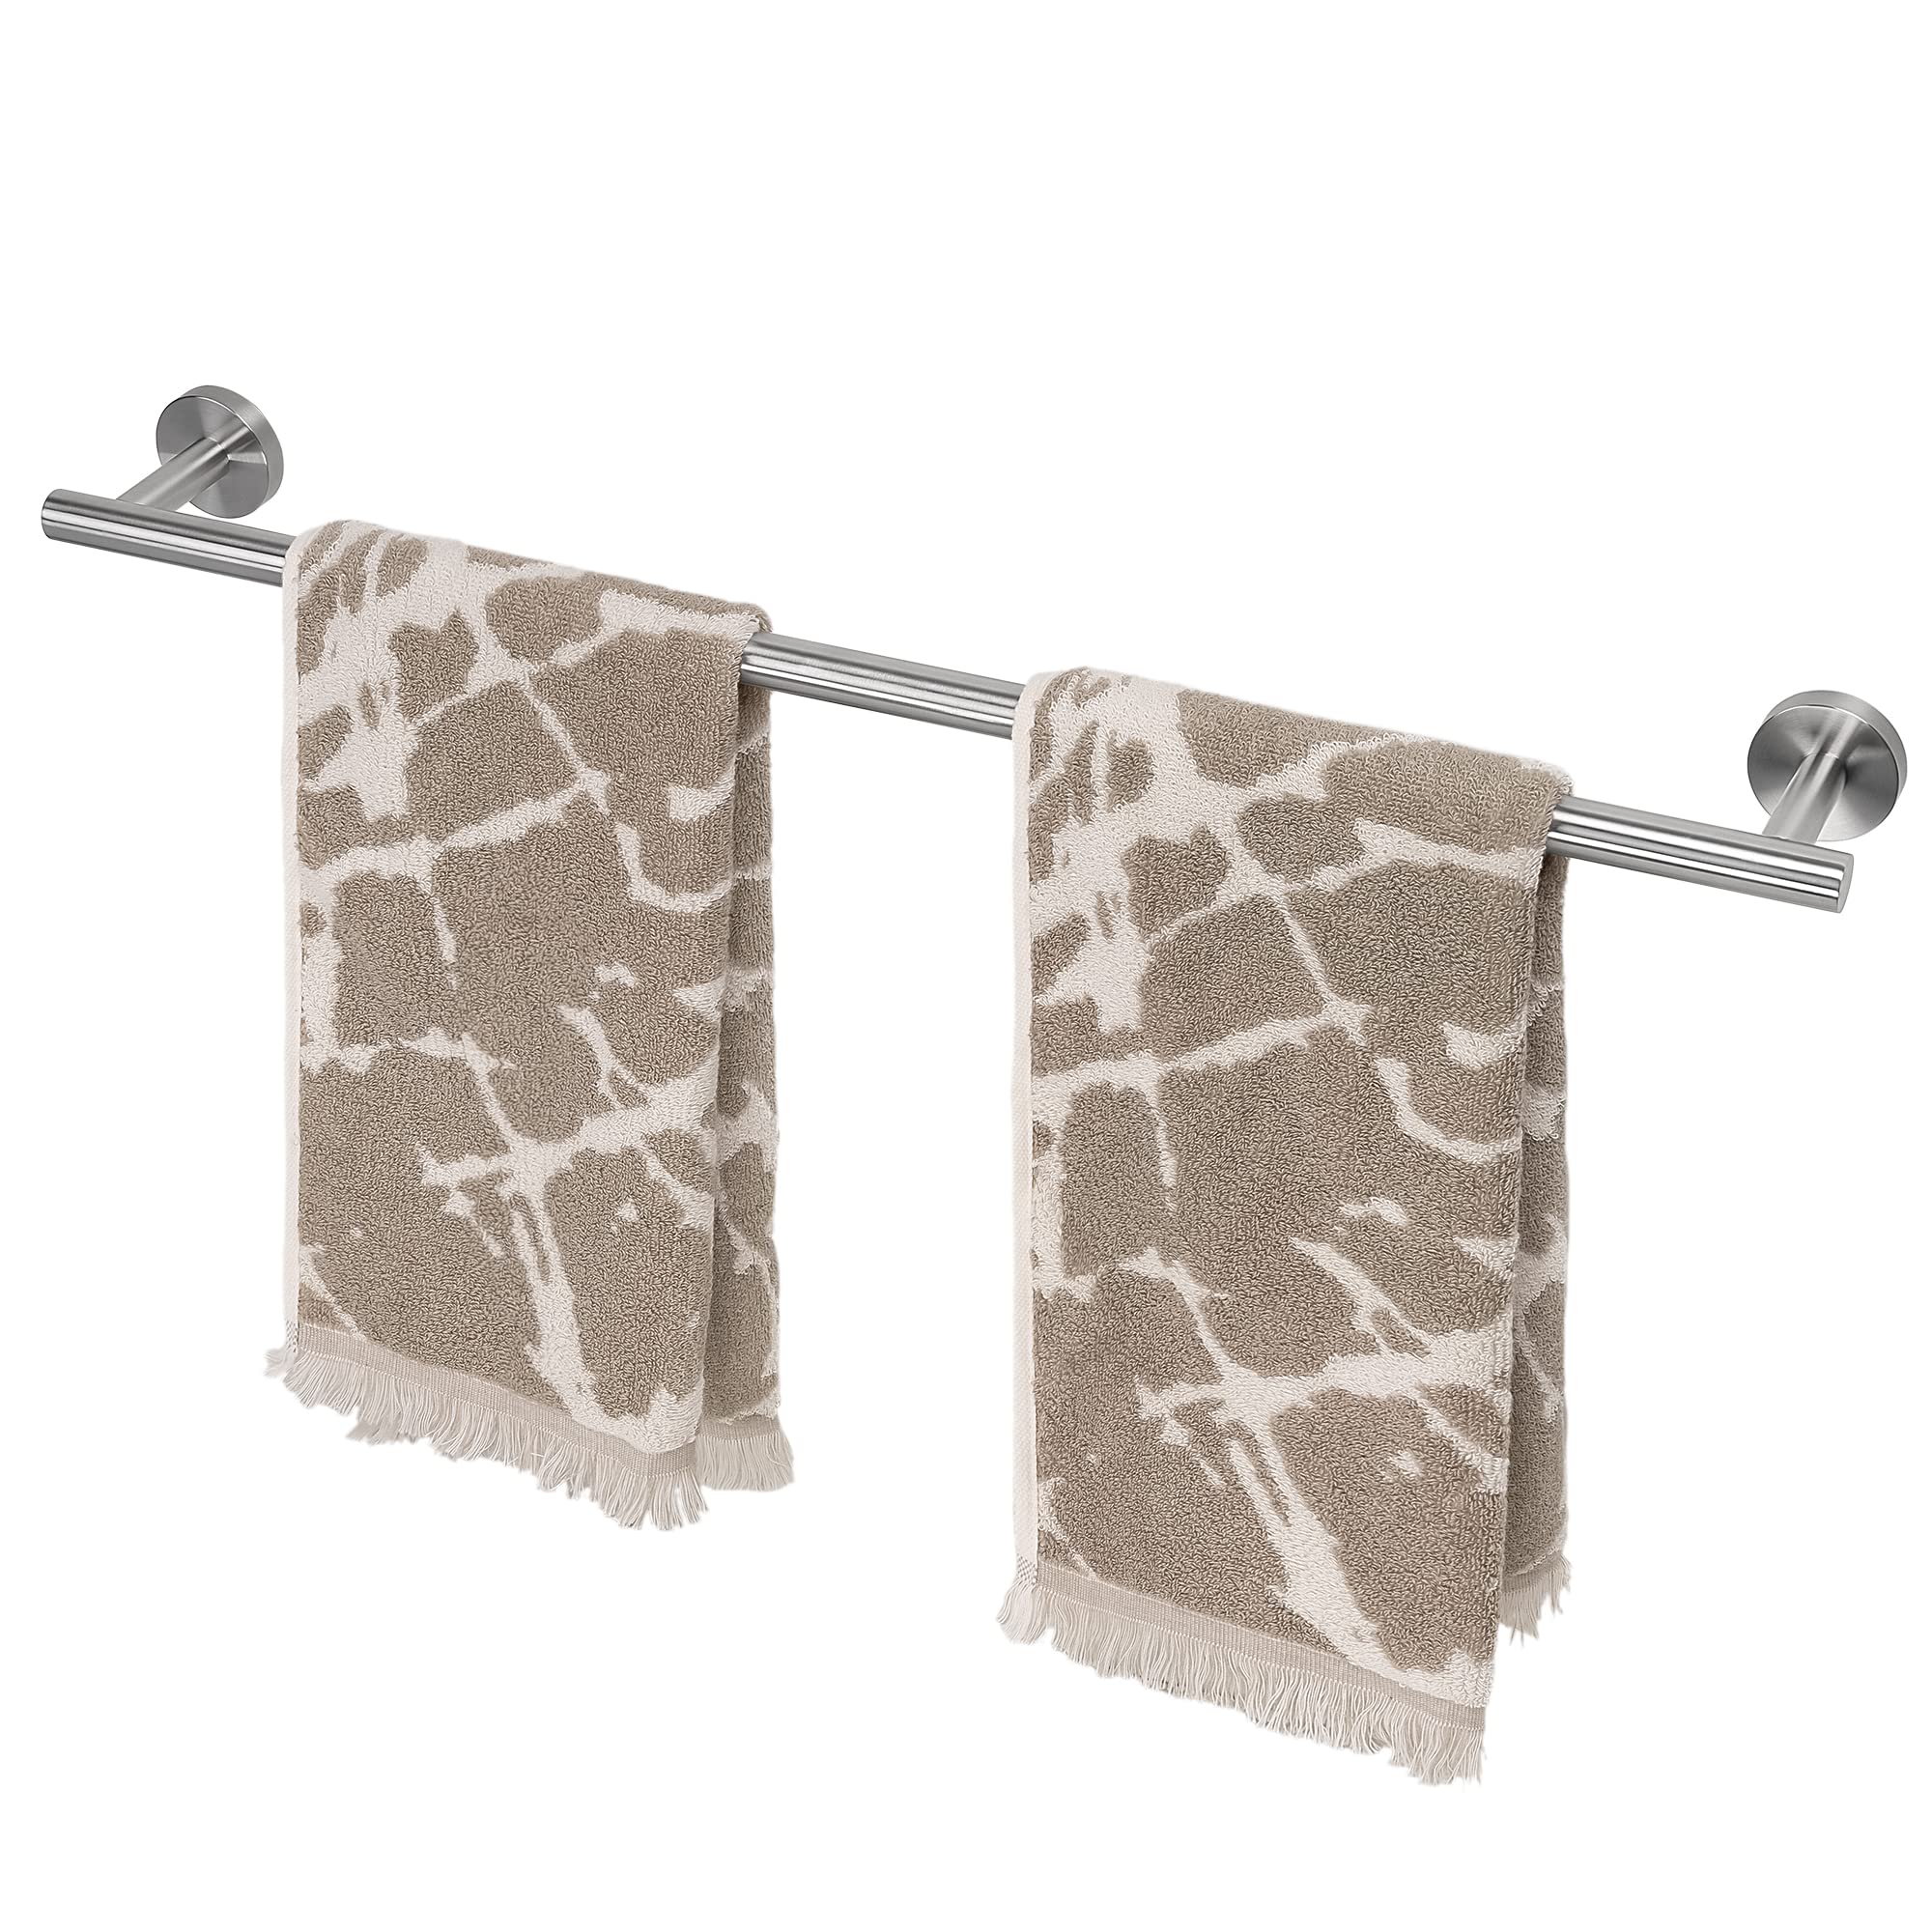 tower rack wall mounted towel bar bathroom stainless steel bath towel holder 25.7 inch brushed nickel